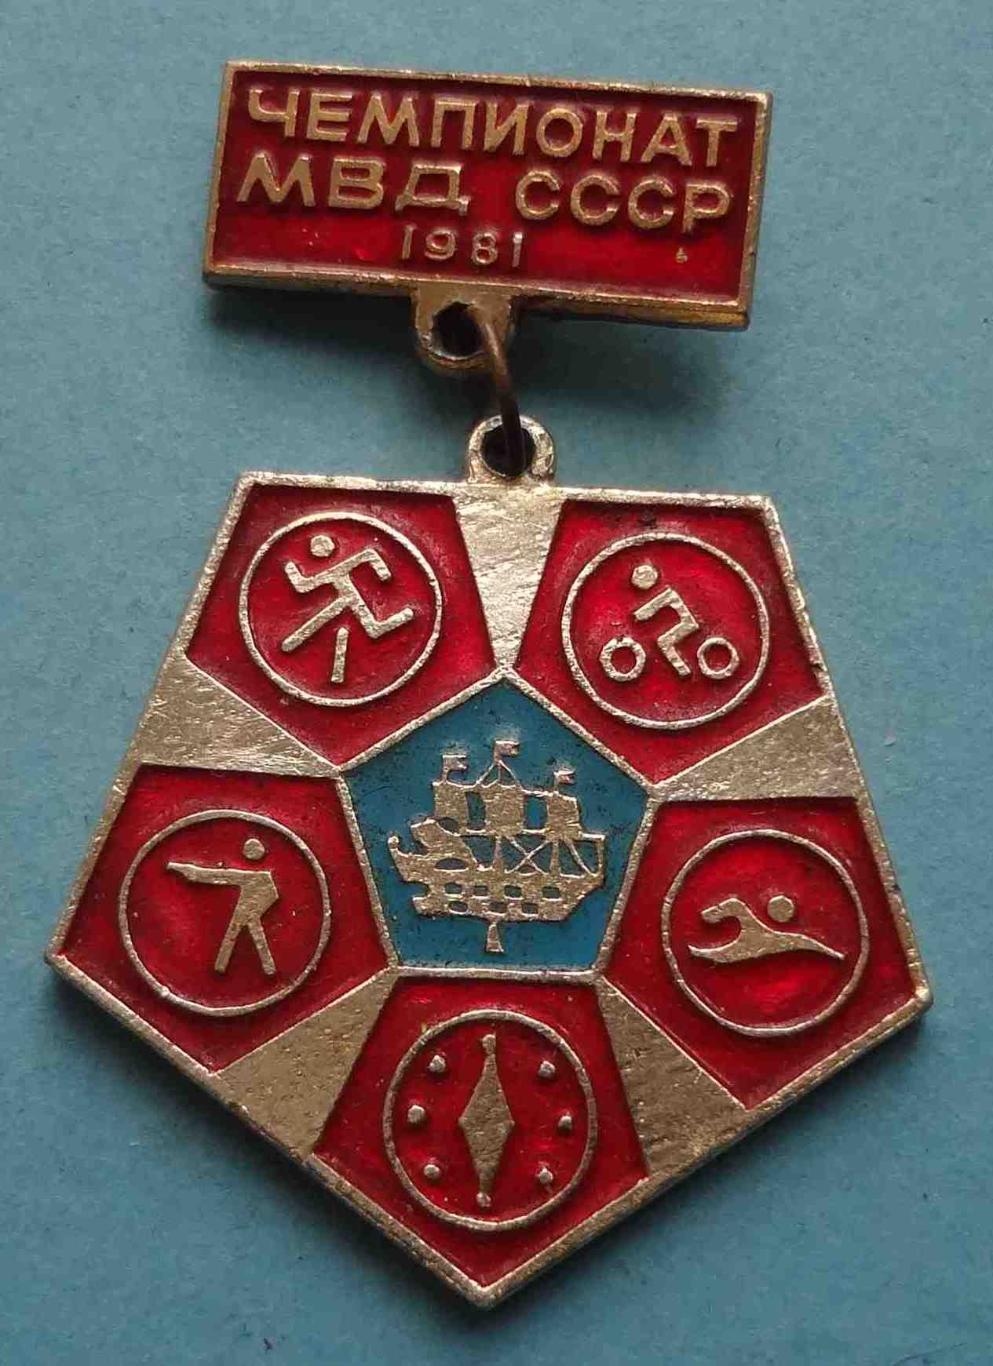 Чемпионат МВД СССР 1981 Ленинград (31)